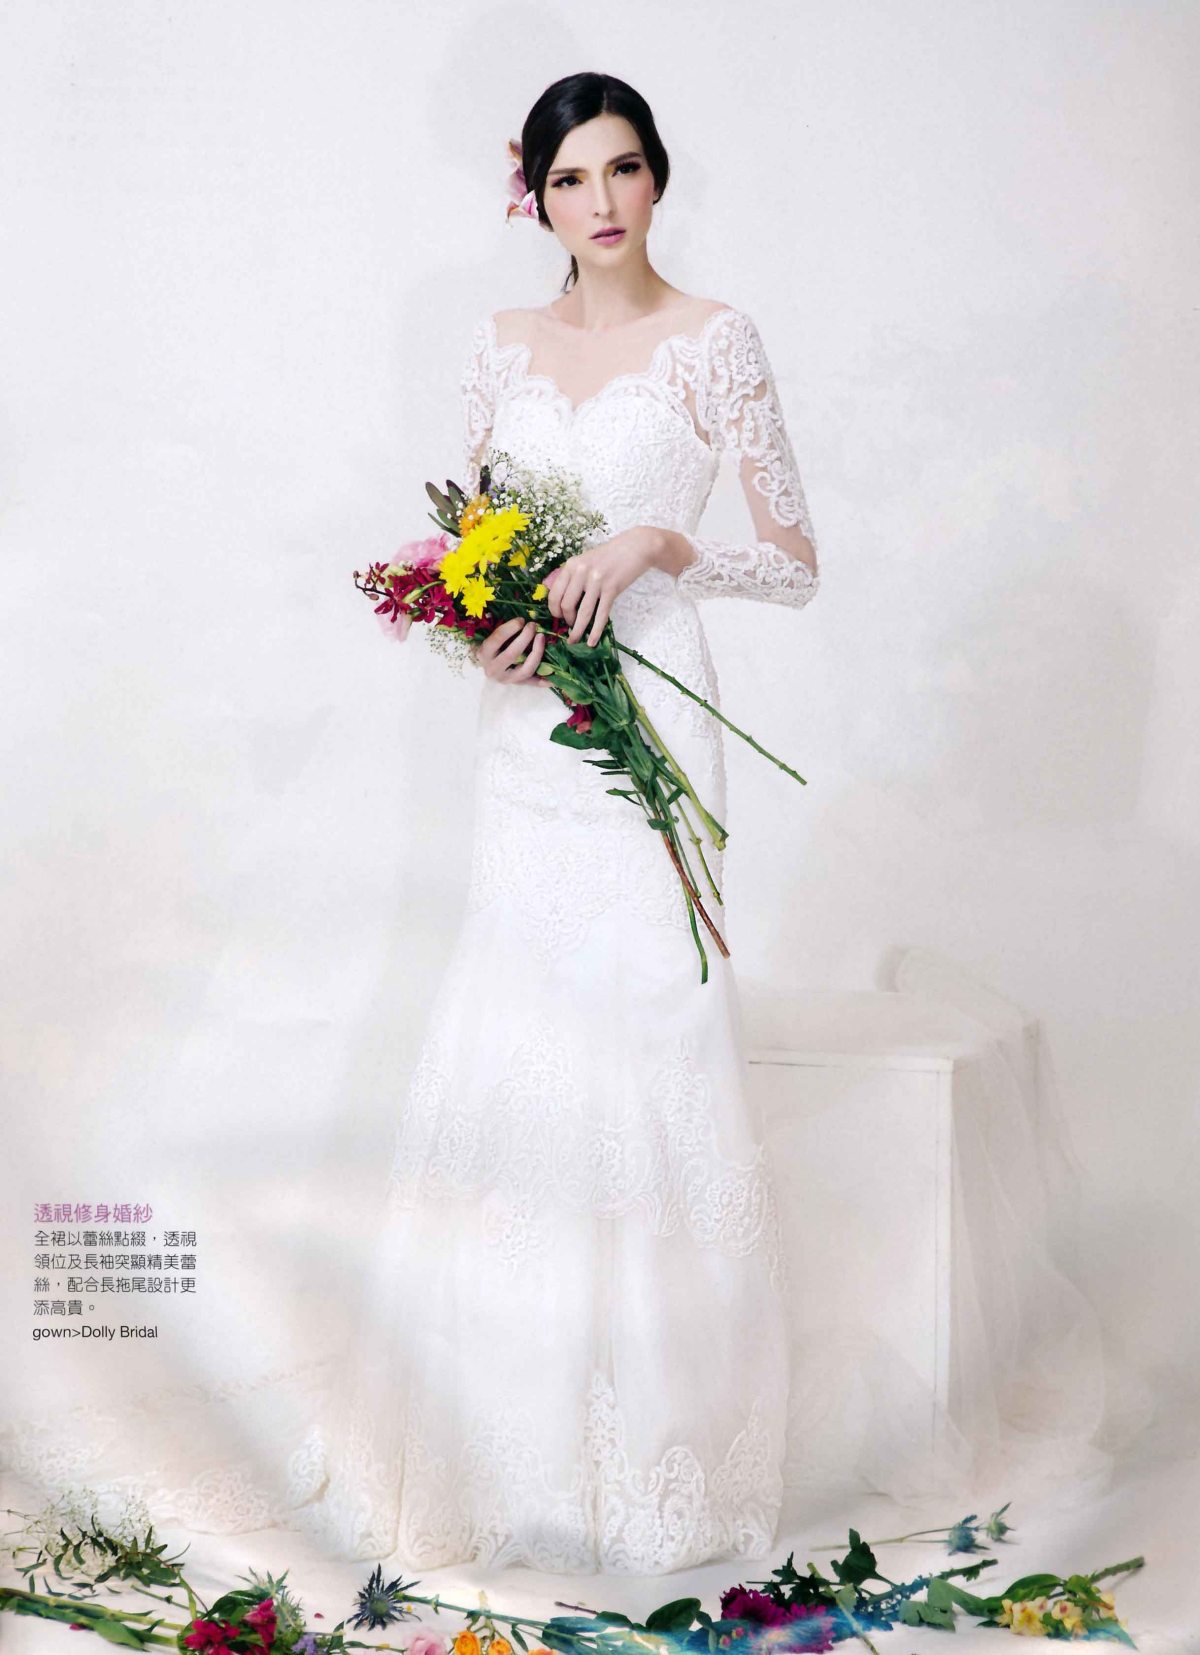 Rosi @ Wedding magazine (8)